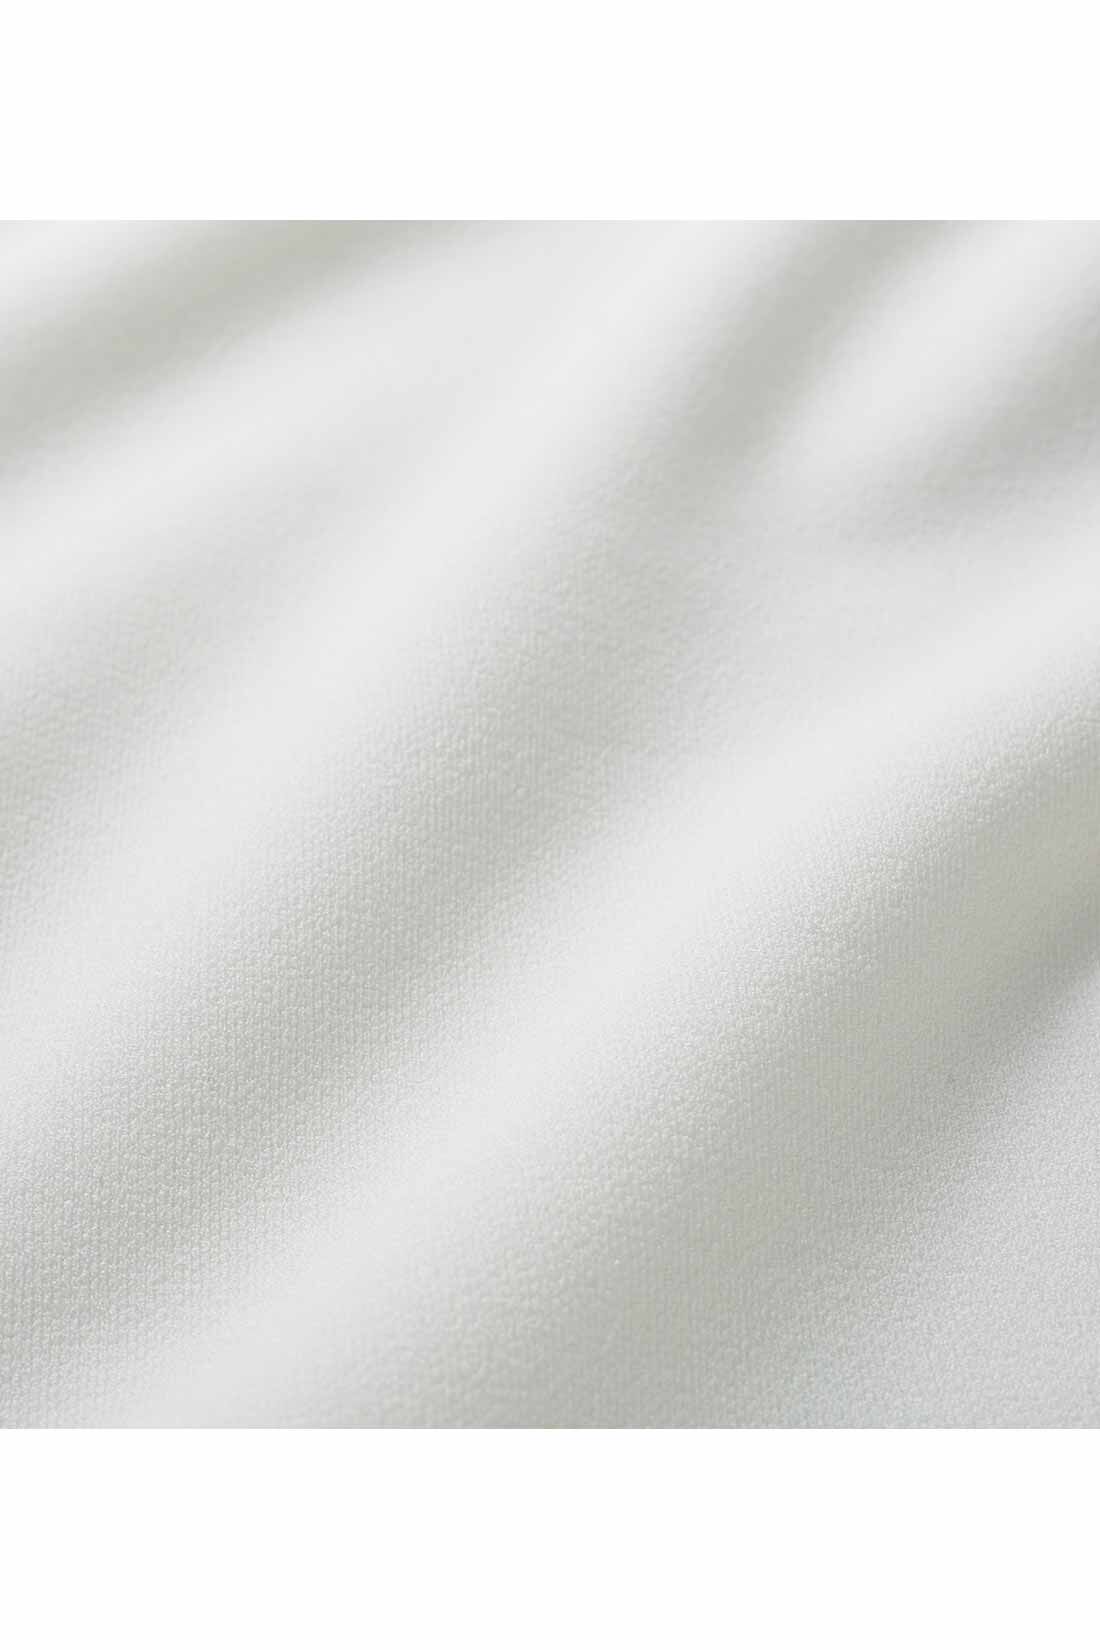 DRECO by IEDIT|【3～10日でお届け】IEDIT[イディット]　チュールを重ねた袖が華やかな きれいめカットソートップス〈シュガーホワイト〉|きれいな表面のカットソージョーゼット。袖部分はチュールを重ねた二枚仕立て。